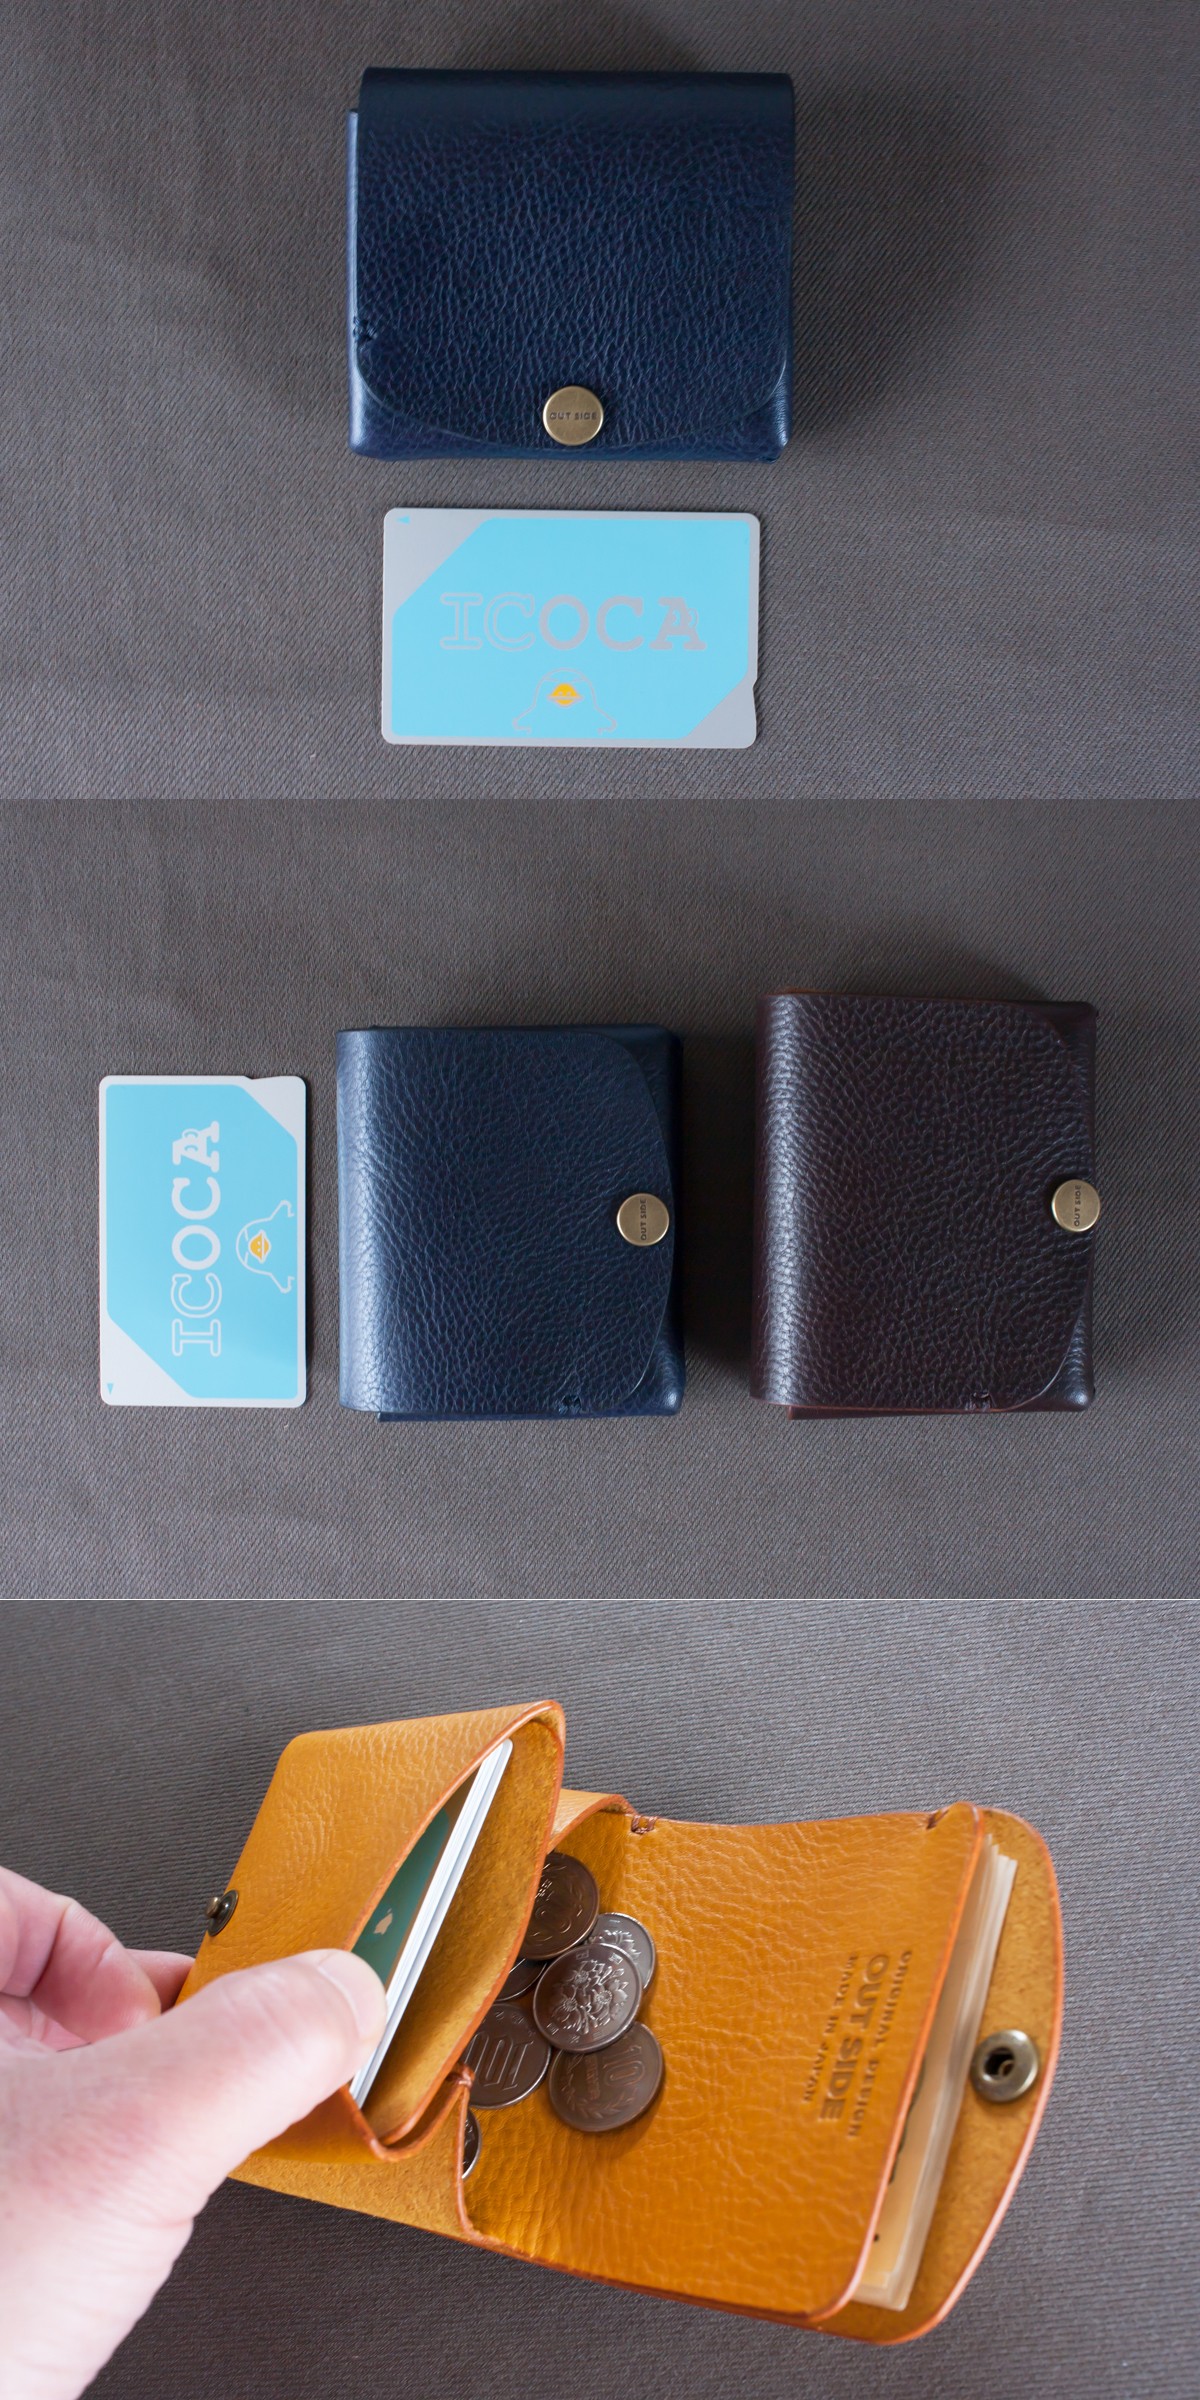 イタリア製牛革の二つ折りピッコロ財布 ネイビー 受注製作 Iichi ハンドメイド クラフト作品 手仕事品の通販